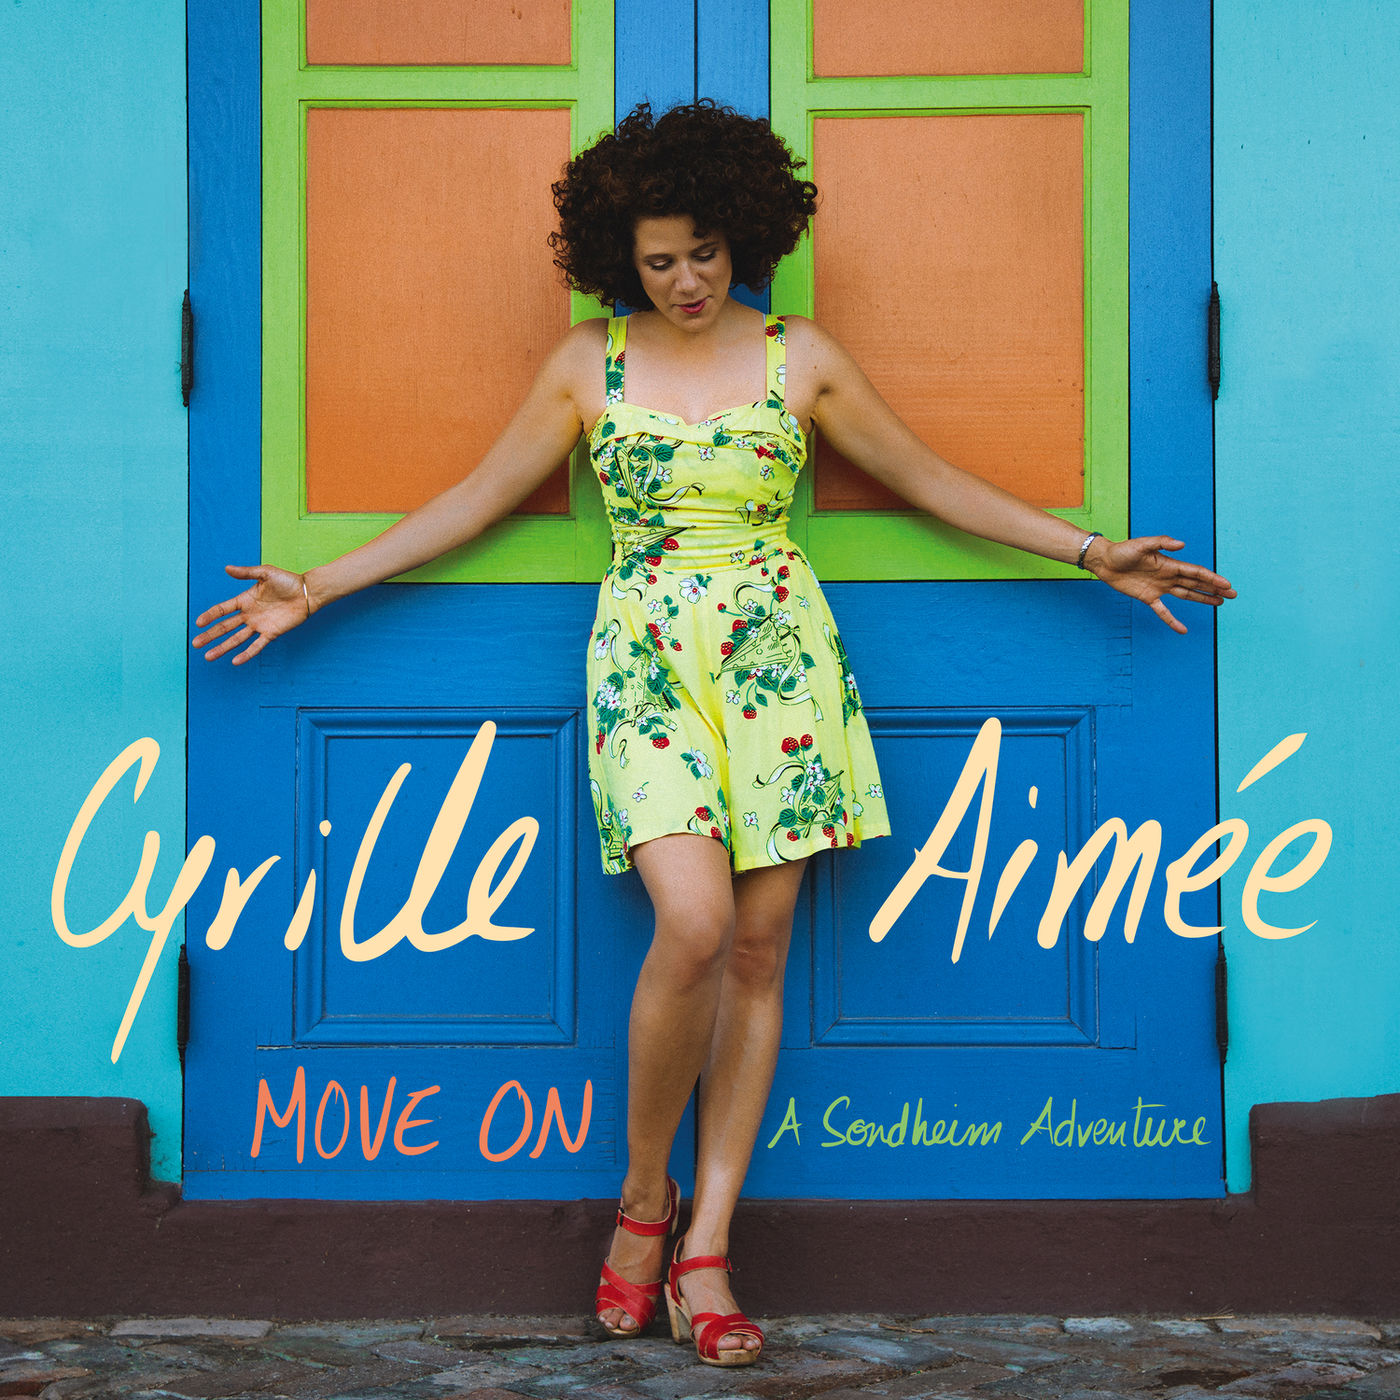 Cyrille Aimee - Move On: A Sondheim Adventure (2019) [FLAC 24bit/96kHz]